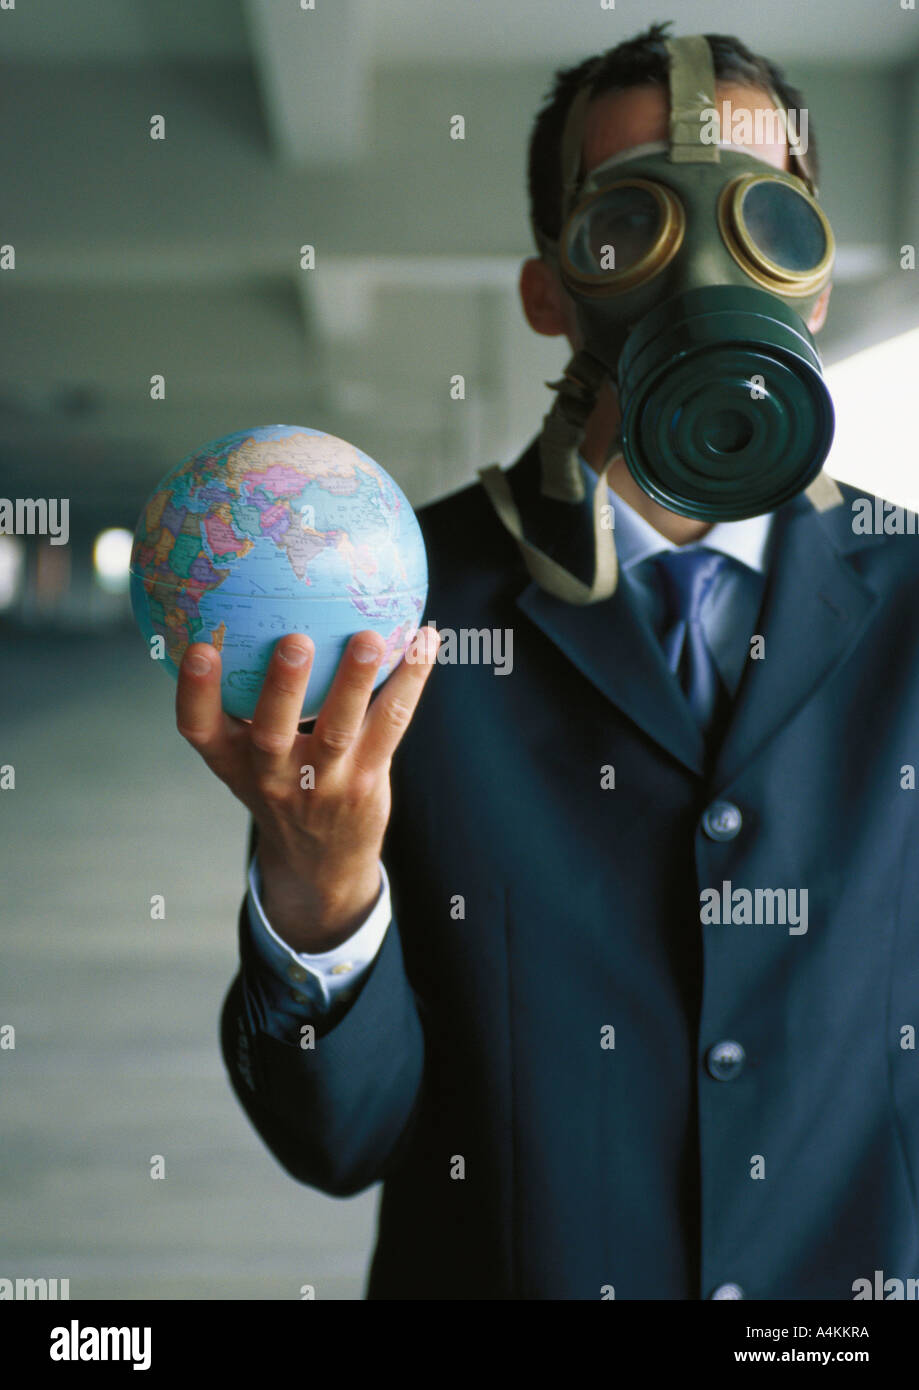 Businessman holding globe jusqu'à la main, portant un masque à gaz sur le visage Banque D'Images